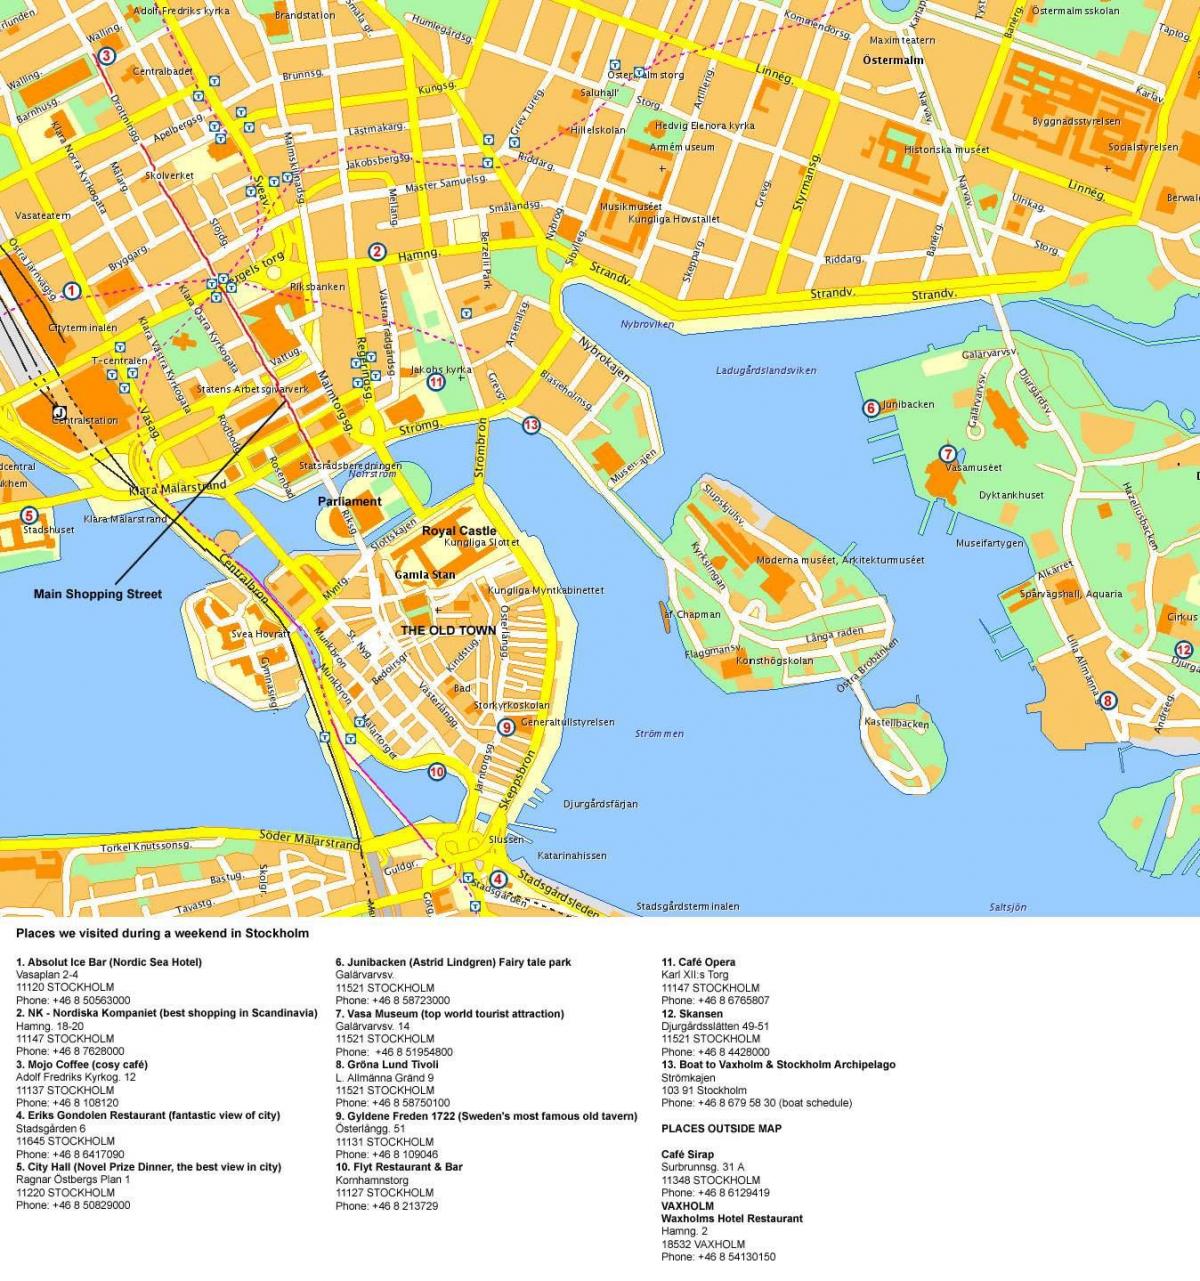 Plan du centre ville de Stockholm